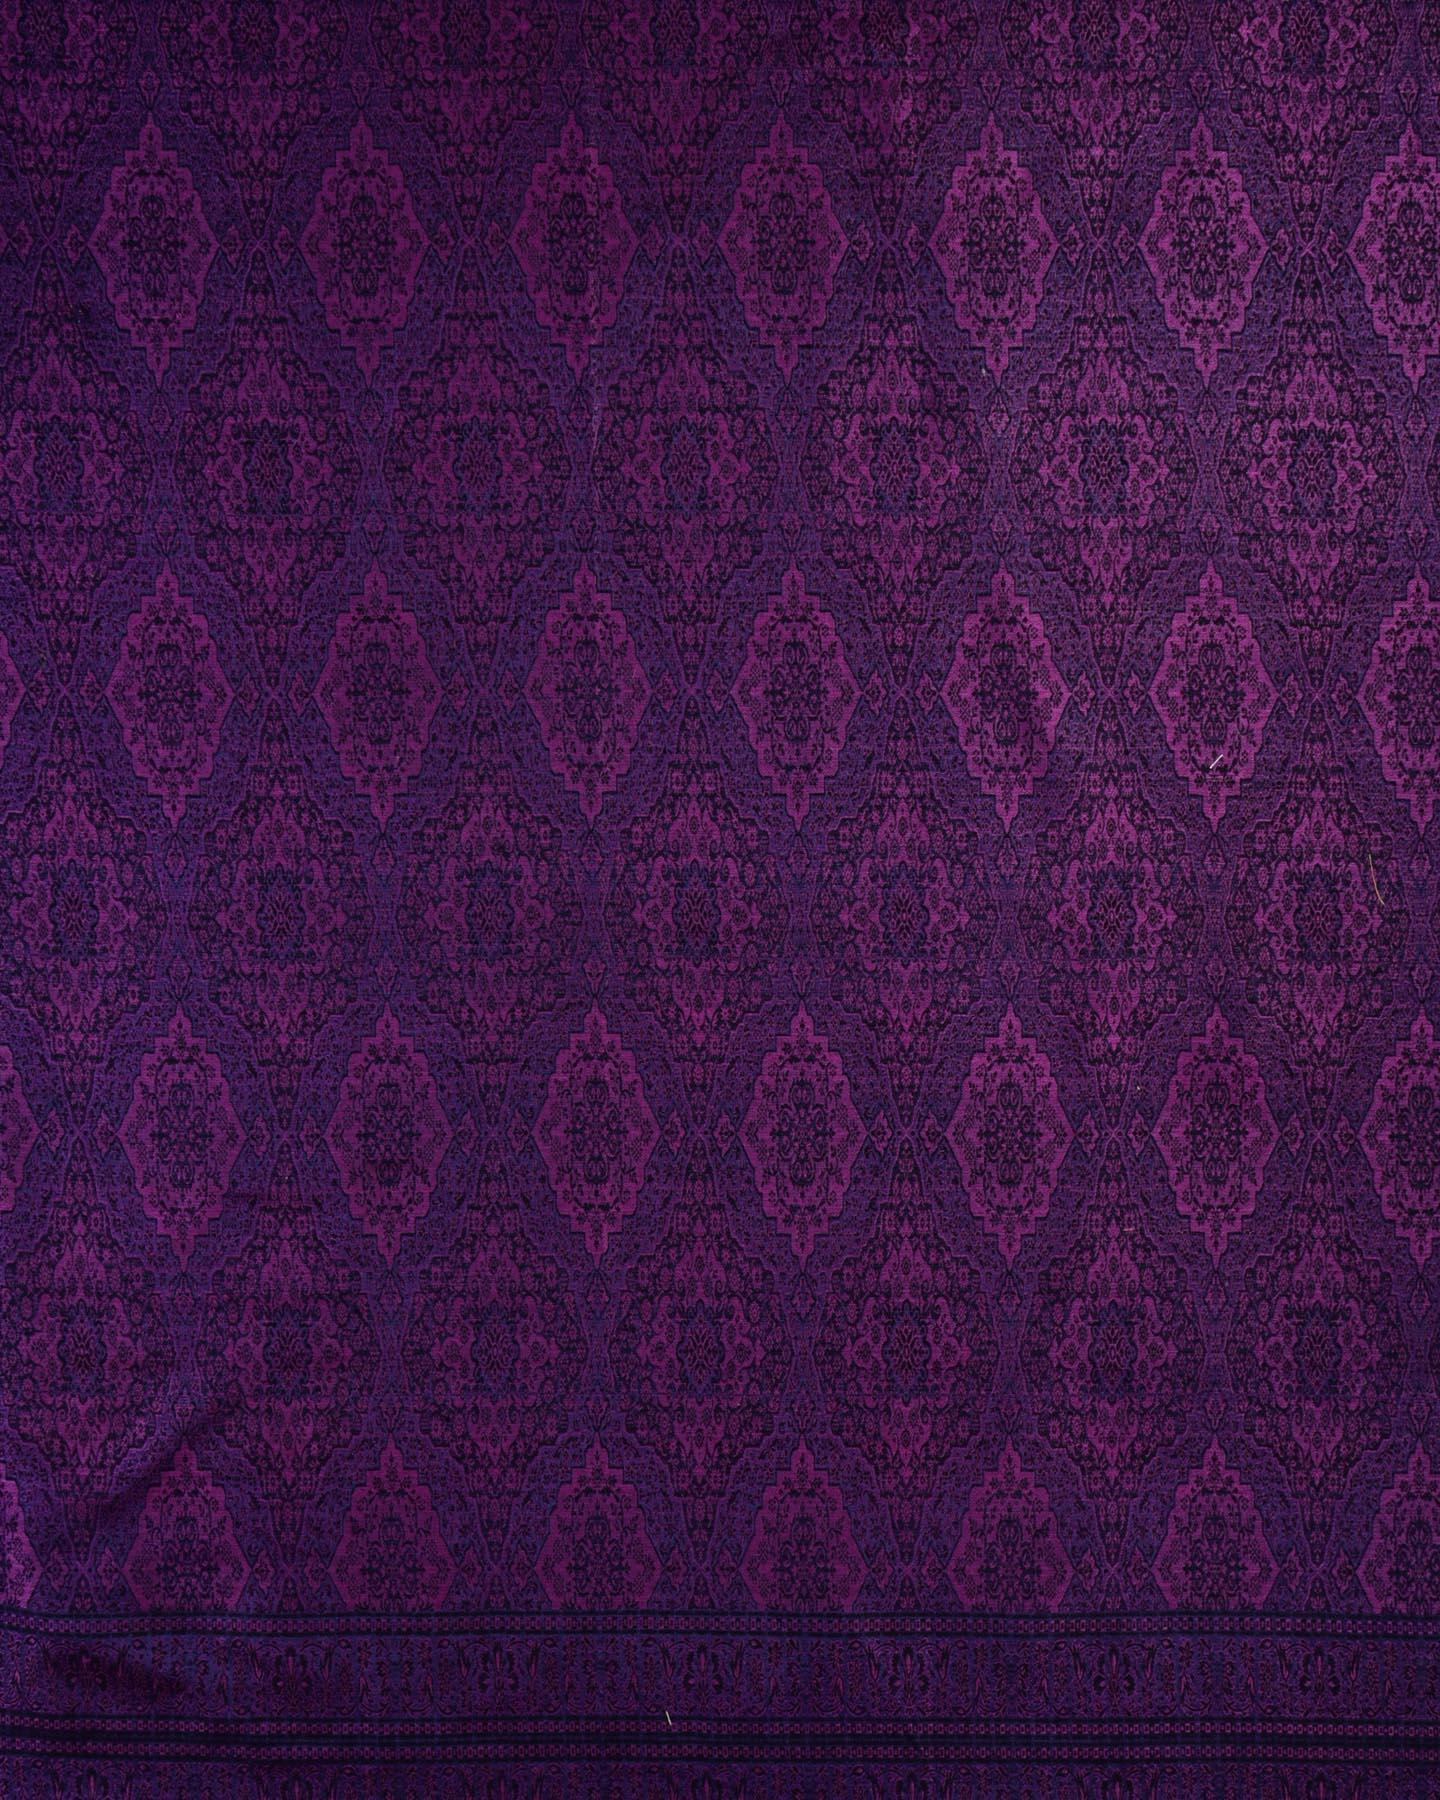 Purple on Navy Blue Banarasi Alfi Damask Jamawar Handwoven Silk-wool Shawl - By HolyWeaves, Benares